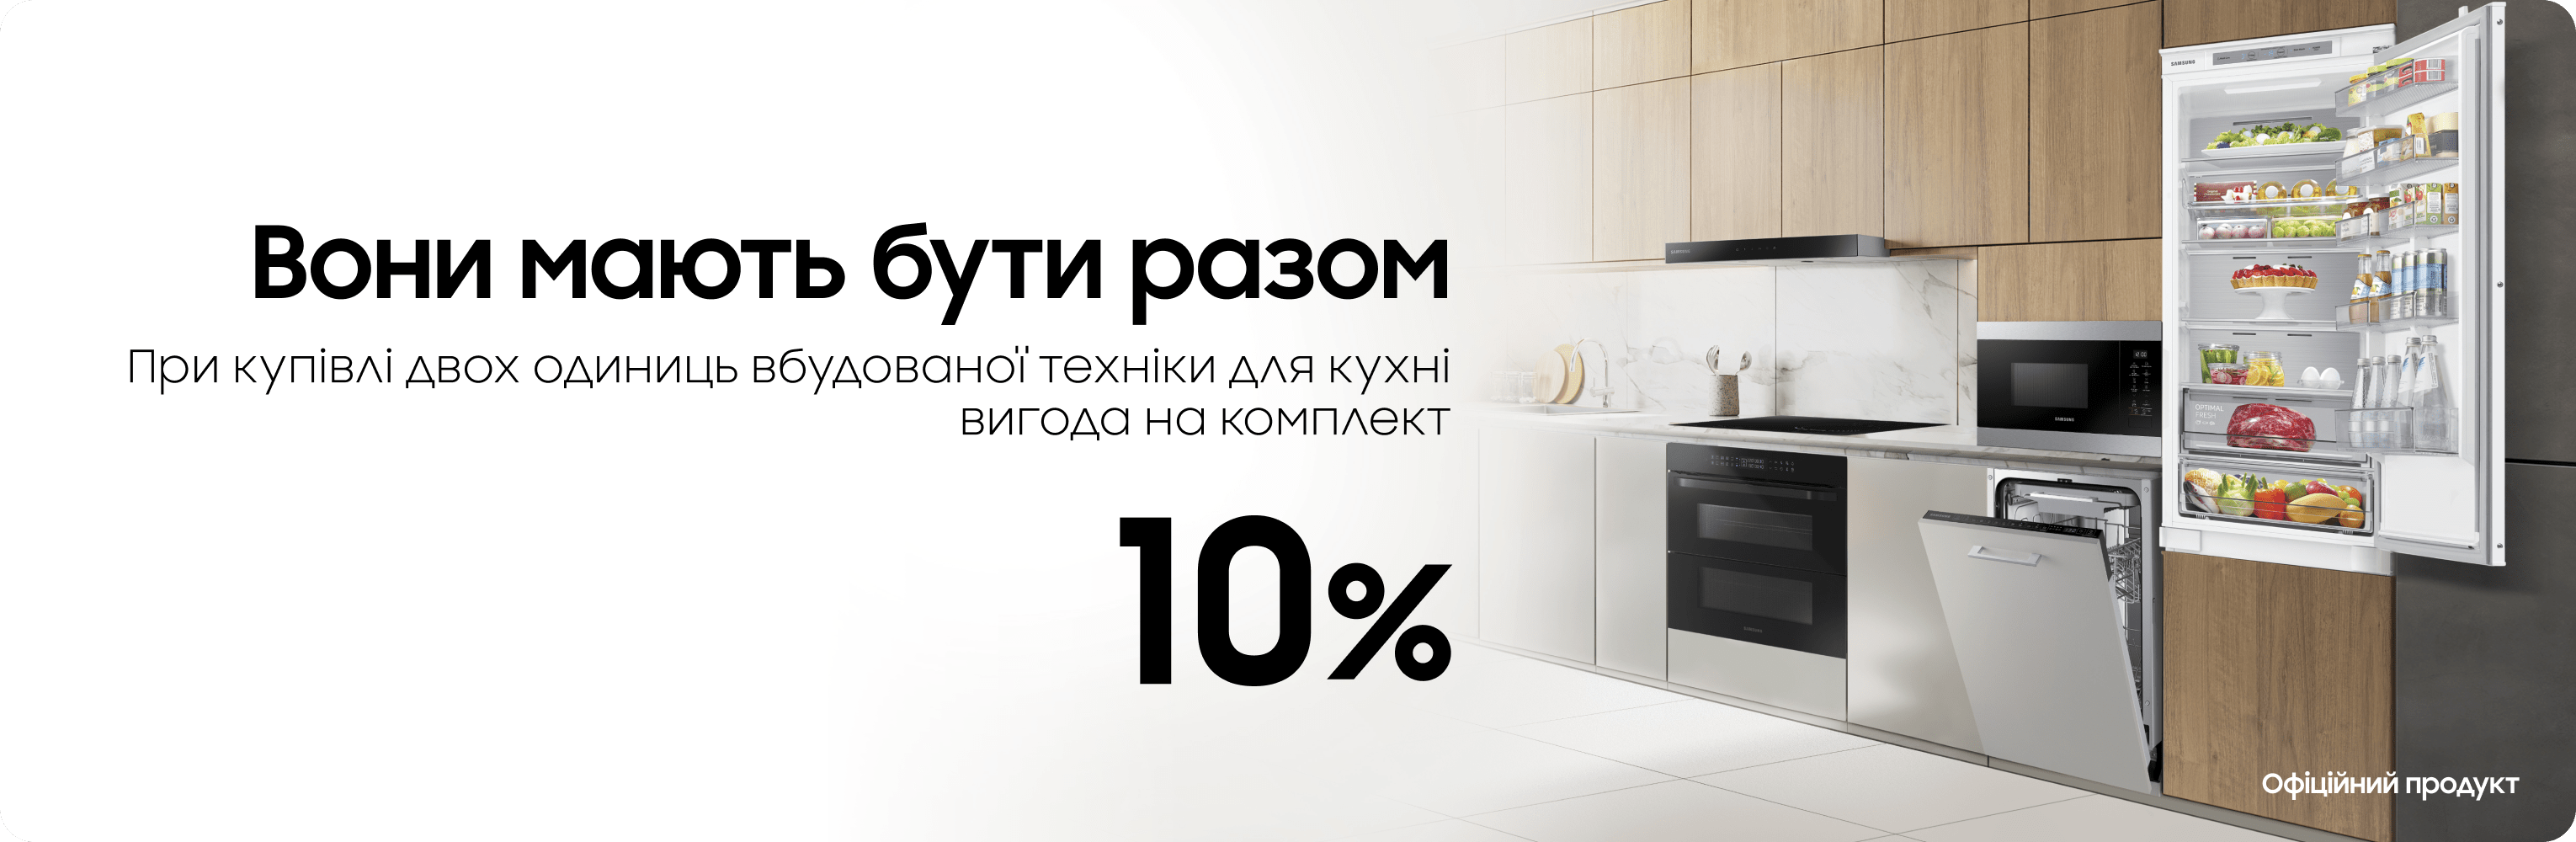 Вигода 10% на комплект холодильник и микроволновка - samsungshop.com.ua